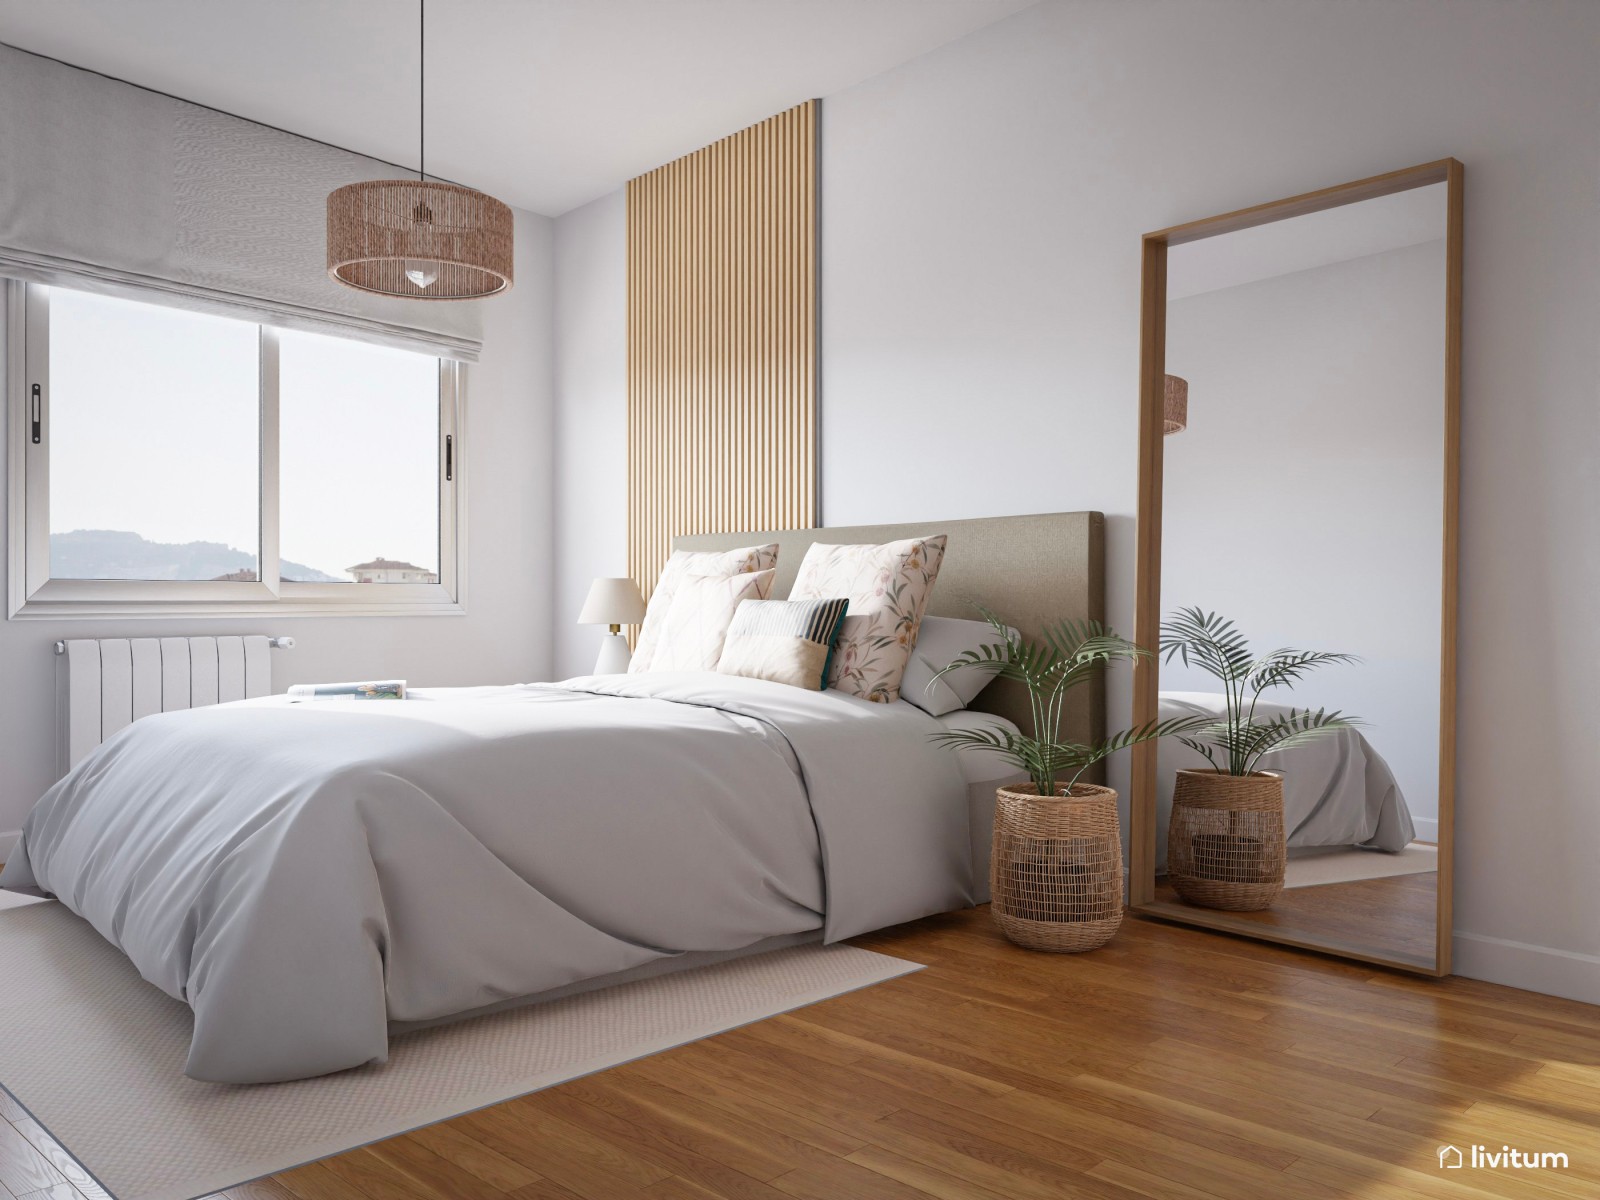 Dormitorio con listones de madera que irradia alegría